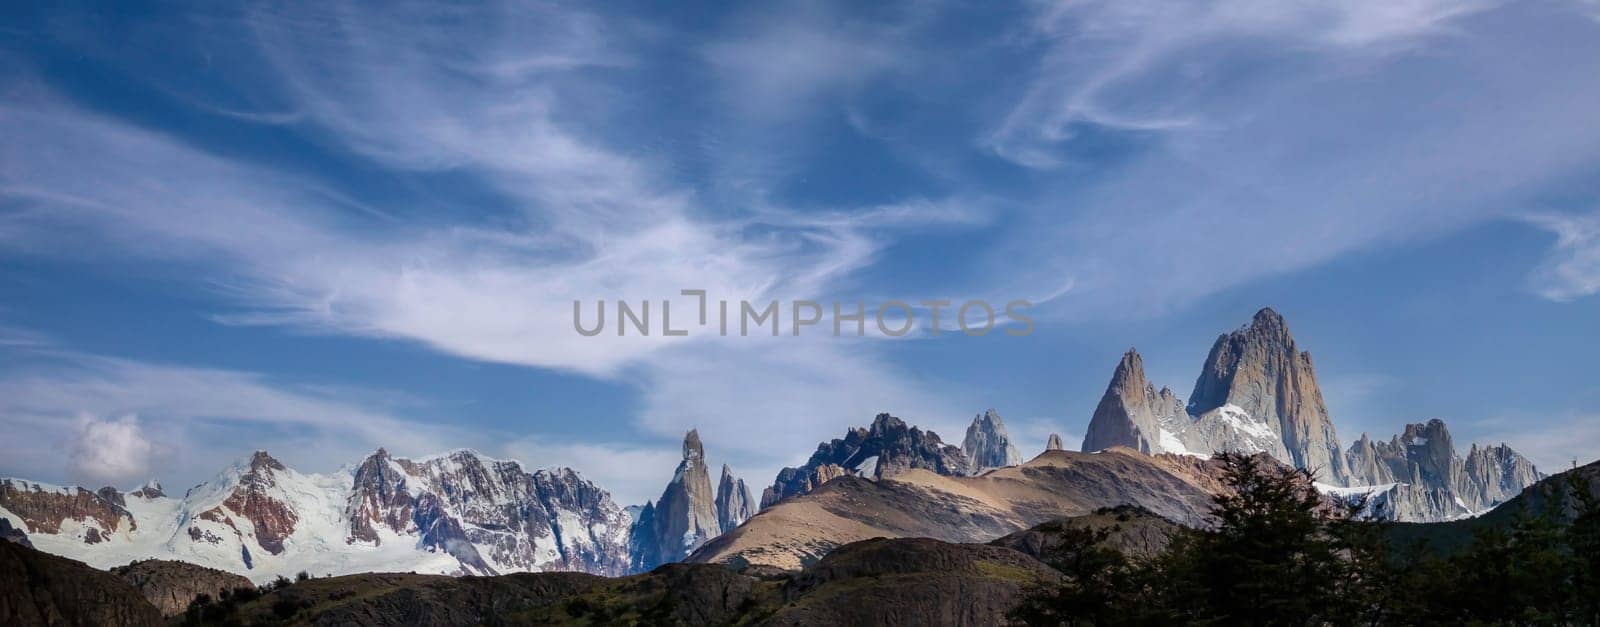 Majestic Mountain Peaks under a Whispy Blue Sky by FerradalFCG